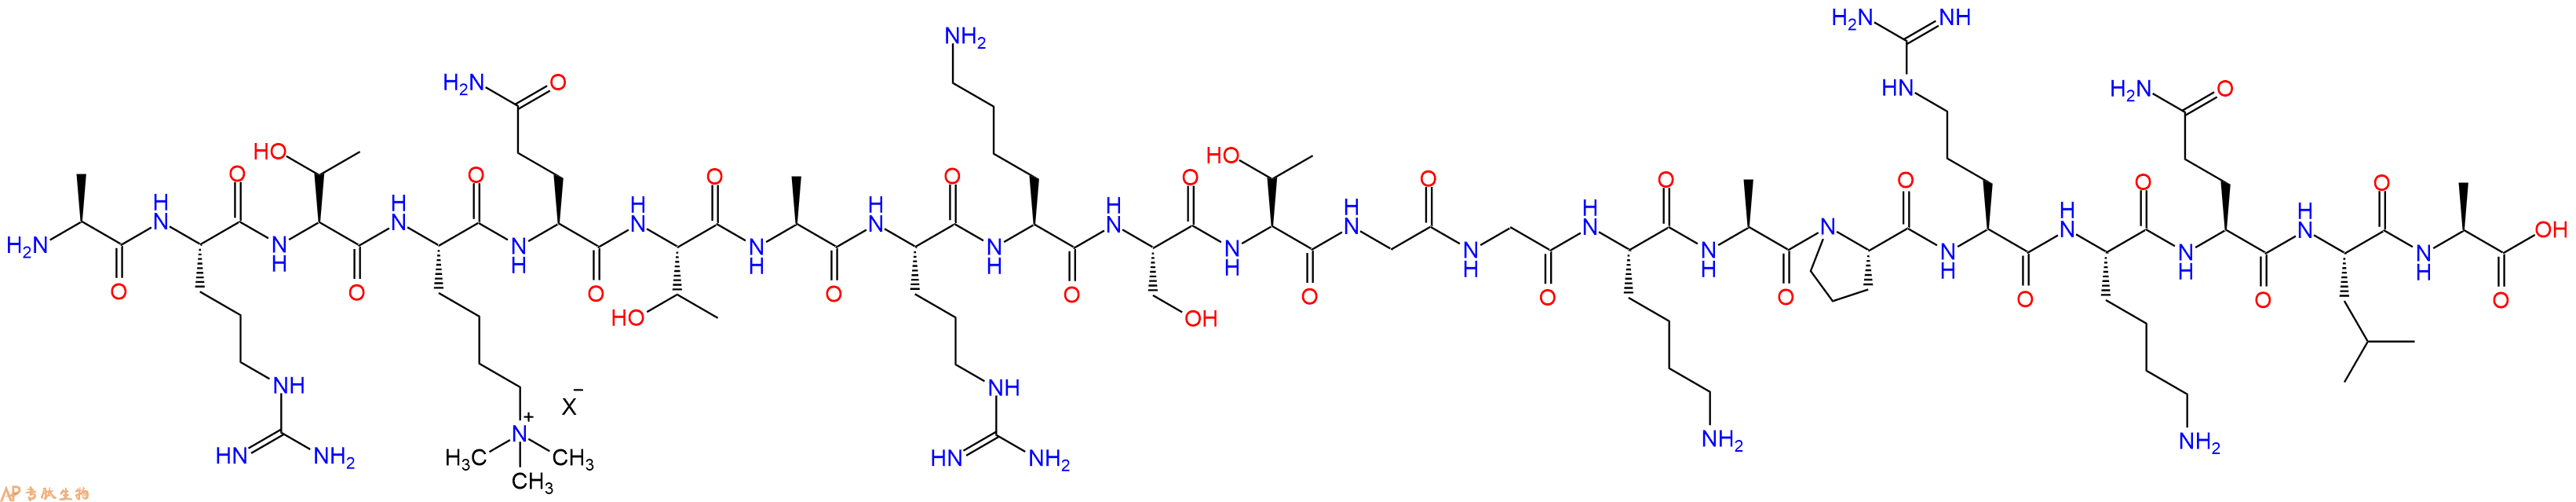 专肽生物产品组蛋白肽段[Lys(Me3)4]-Histone H3(1-21), H3K4(Me3)